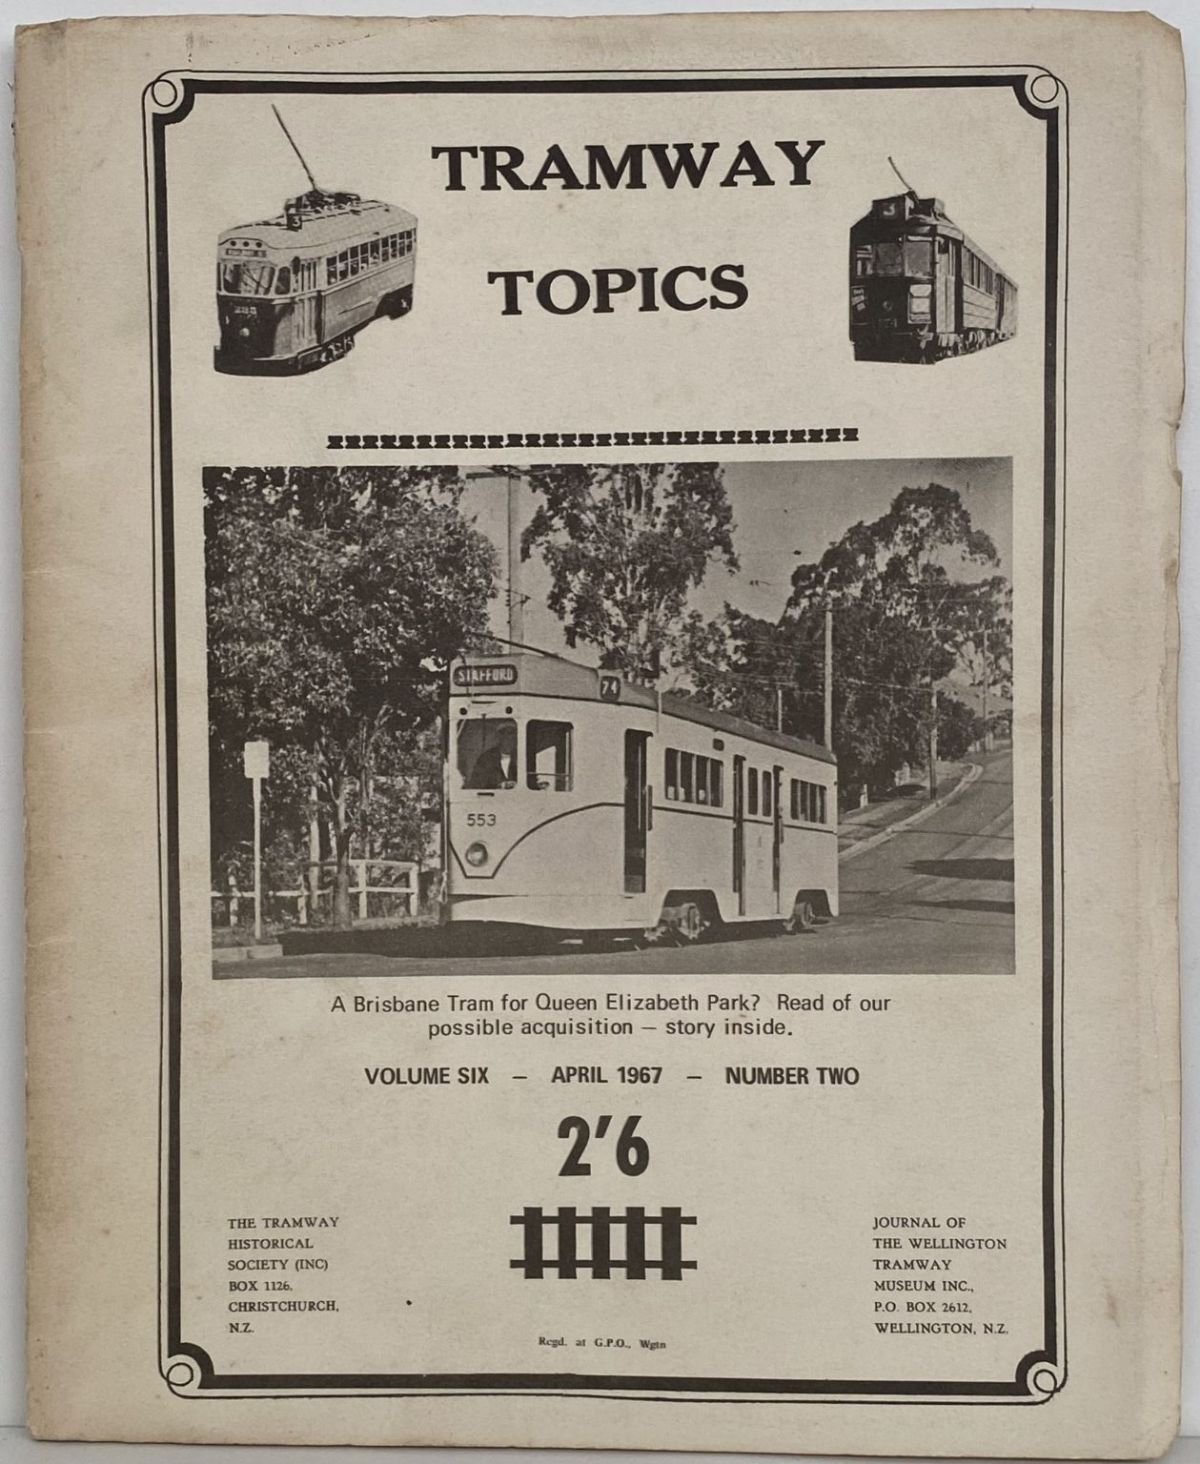 TRAMWAY TOPICS Vol 6, No 2, April 1967